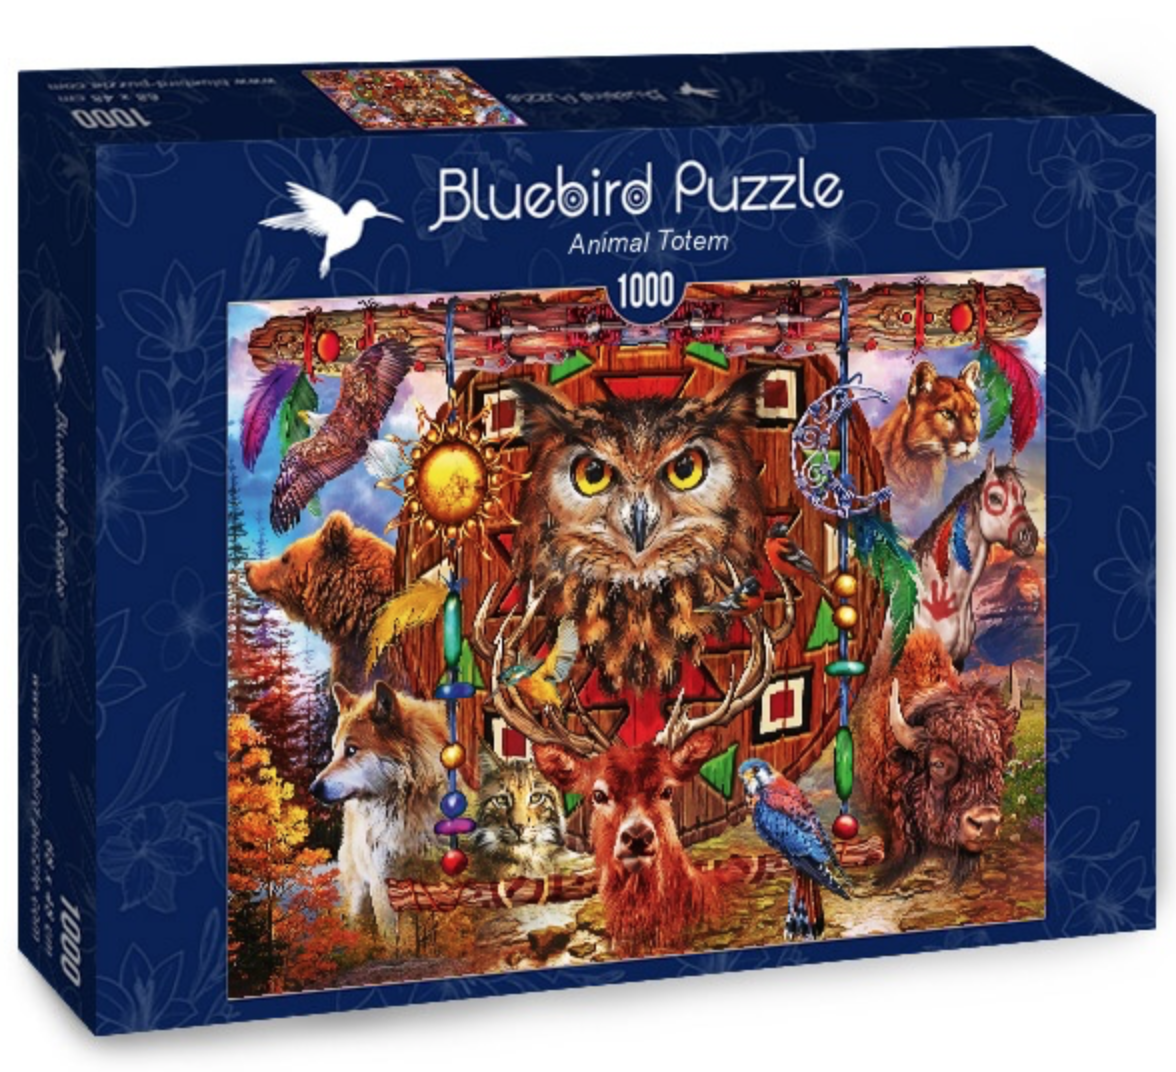 Acheter des Bluebird Puzzels bon marché? Vaste choix! - Puzzles123